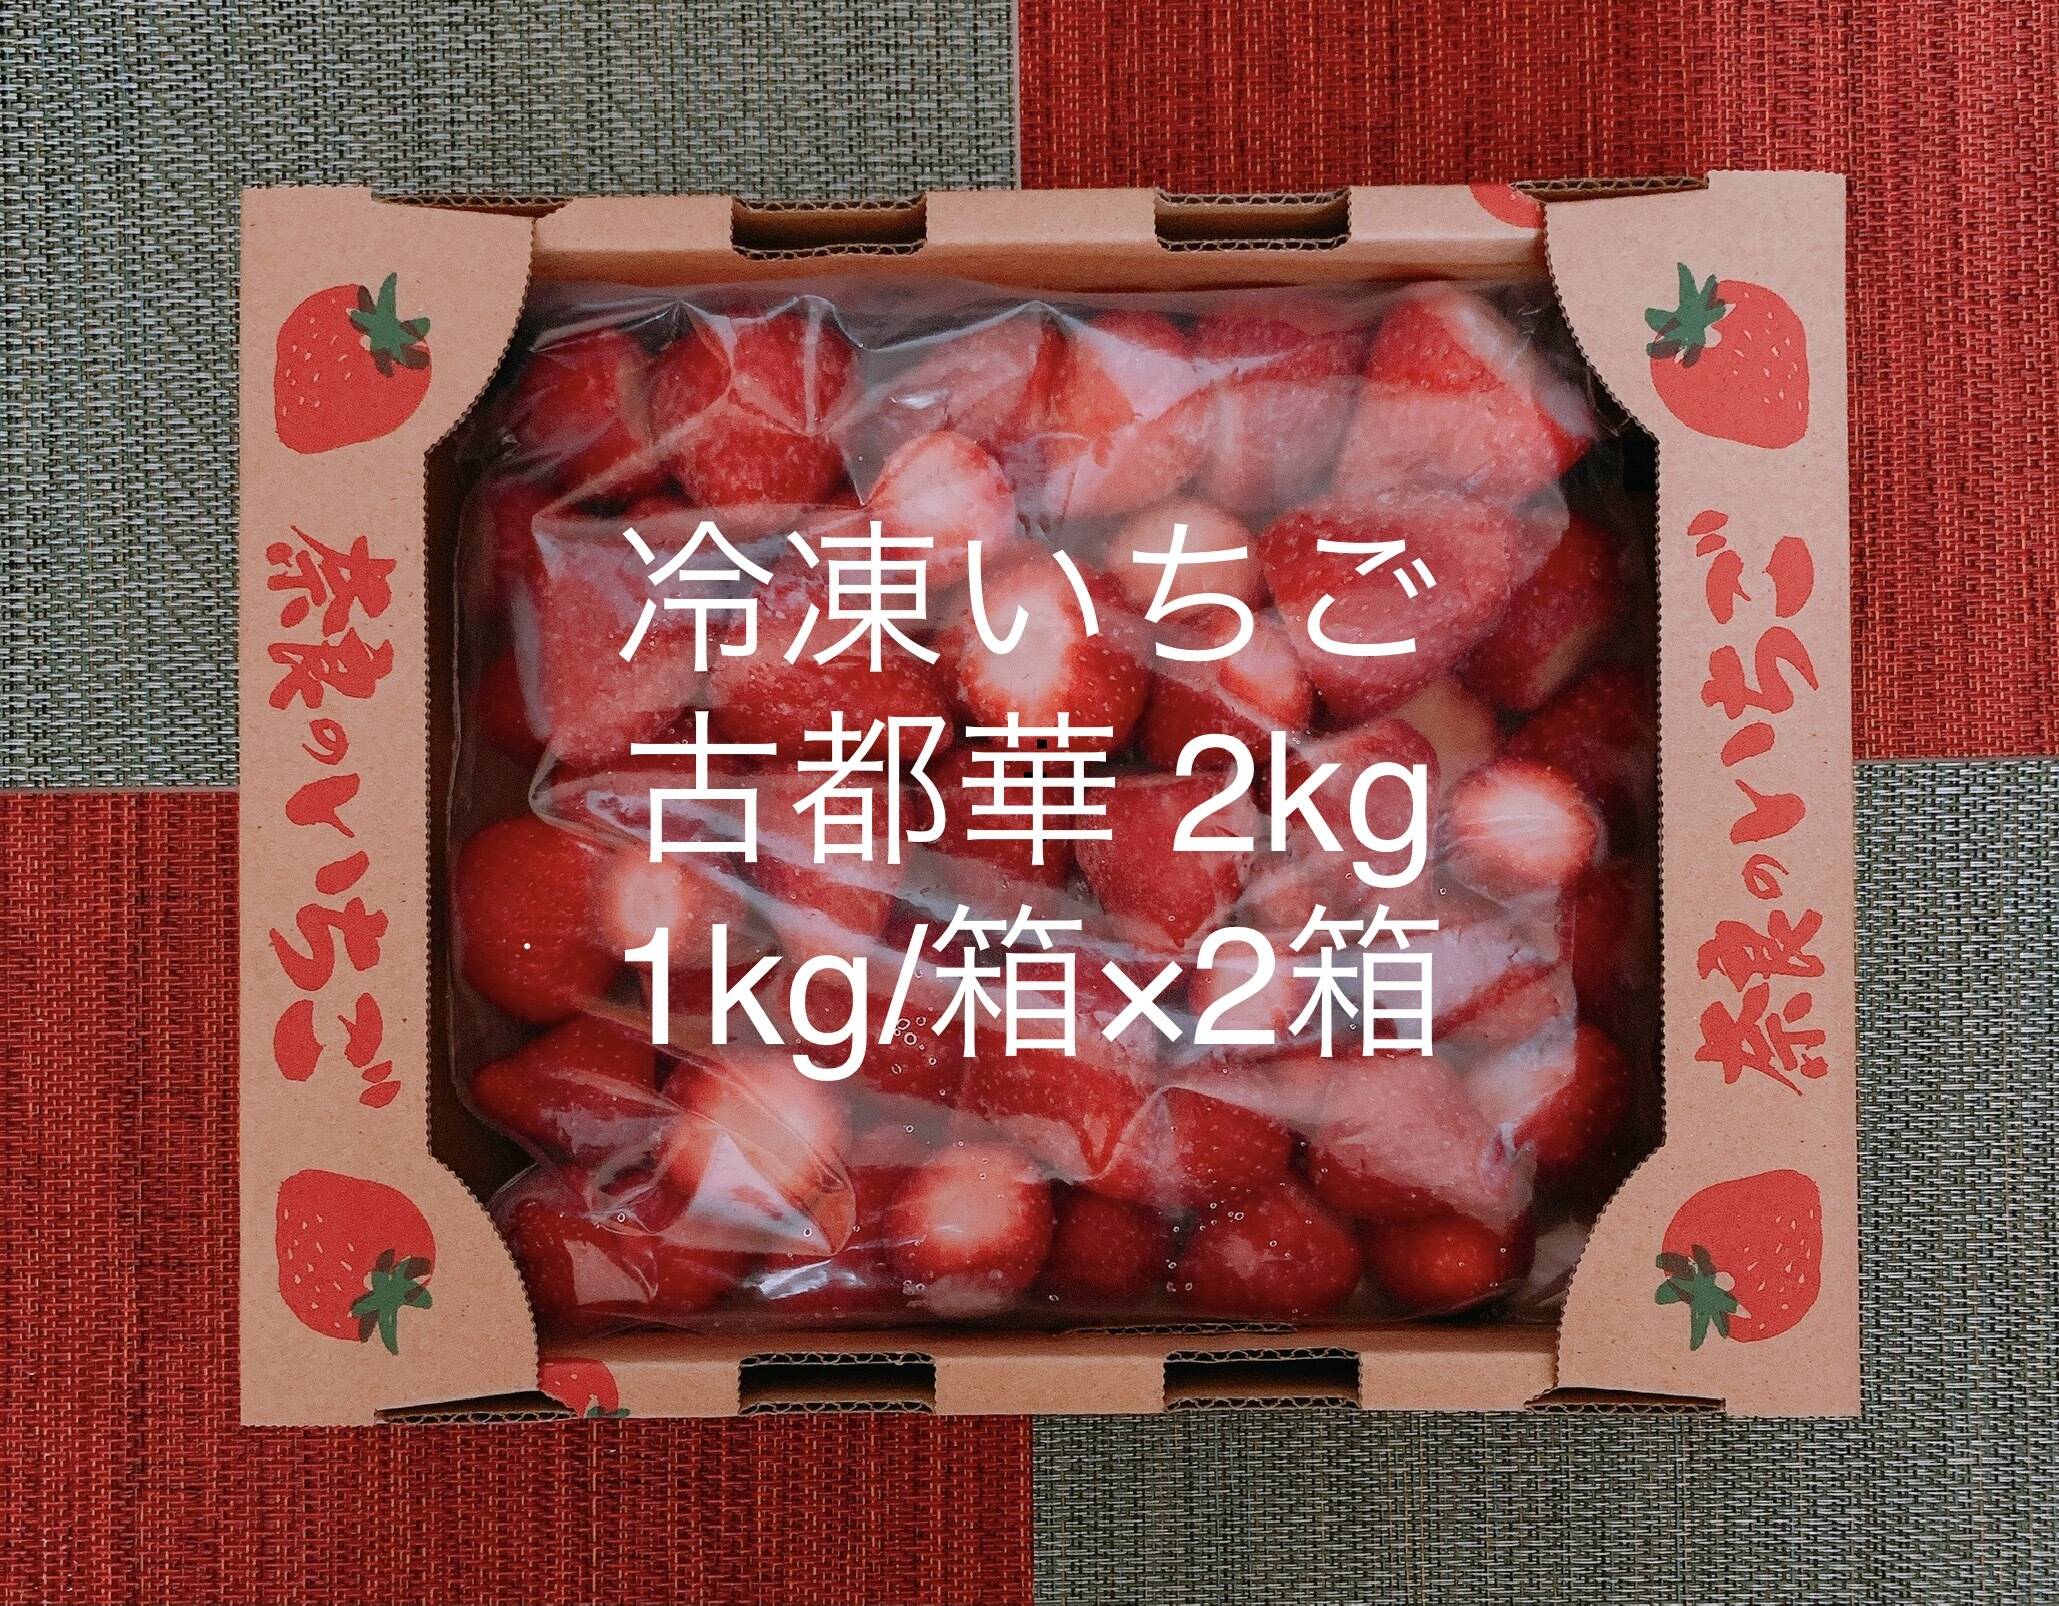 奈良県産 高級苺 古都華 冷凍いちご8kg